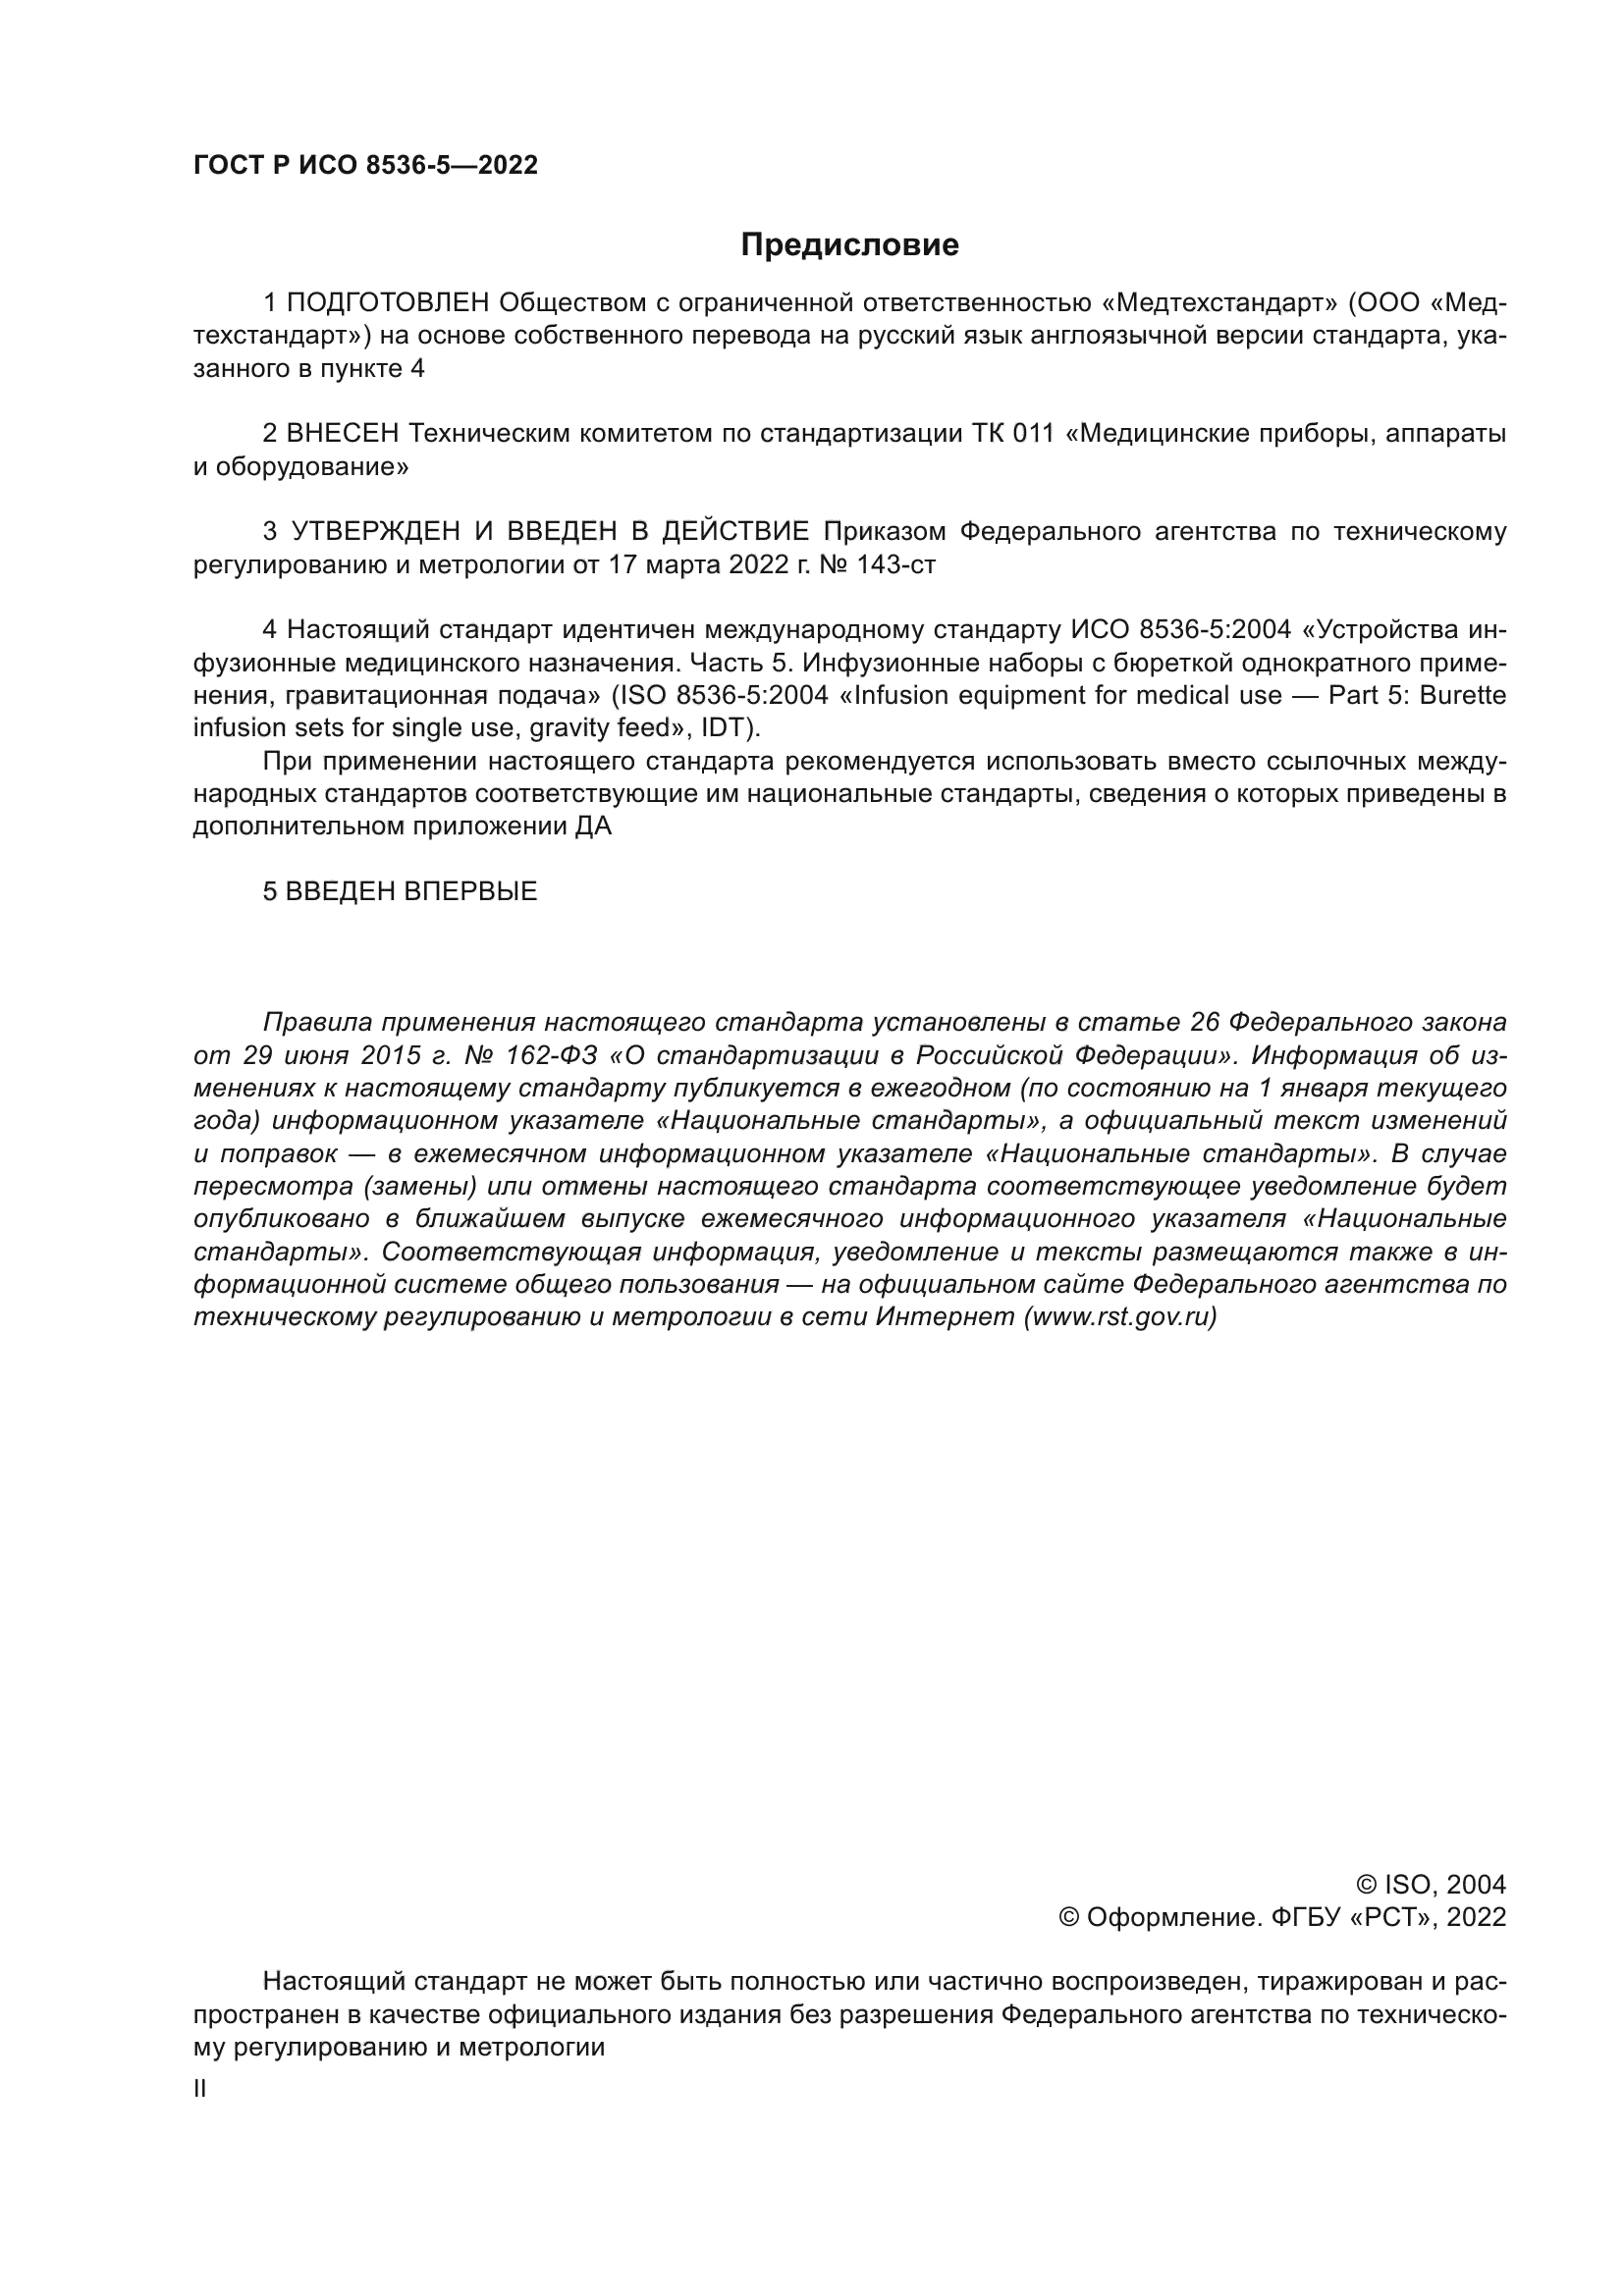 ГОСТ Р ИСО 8536-5-2022